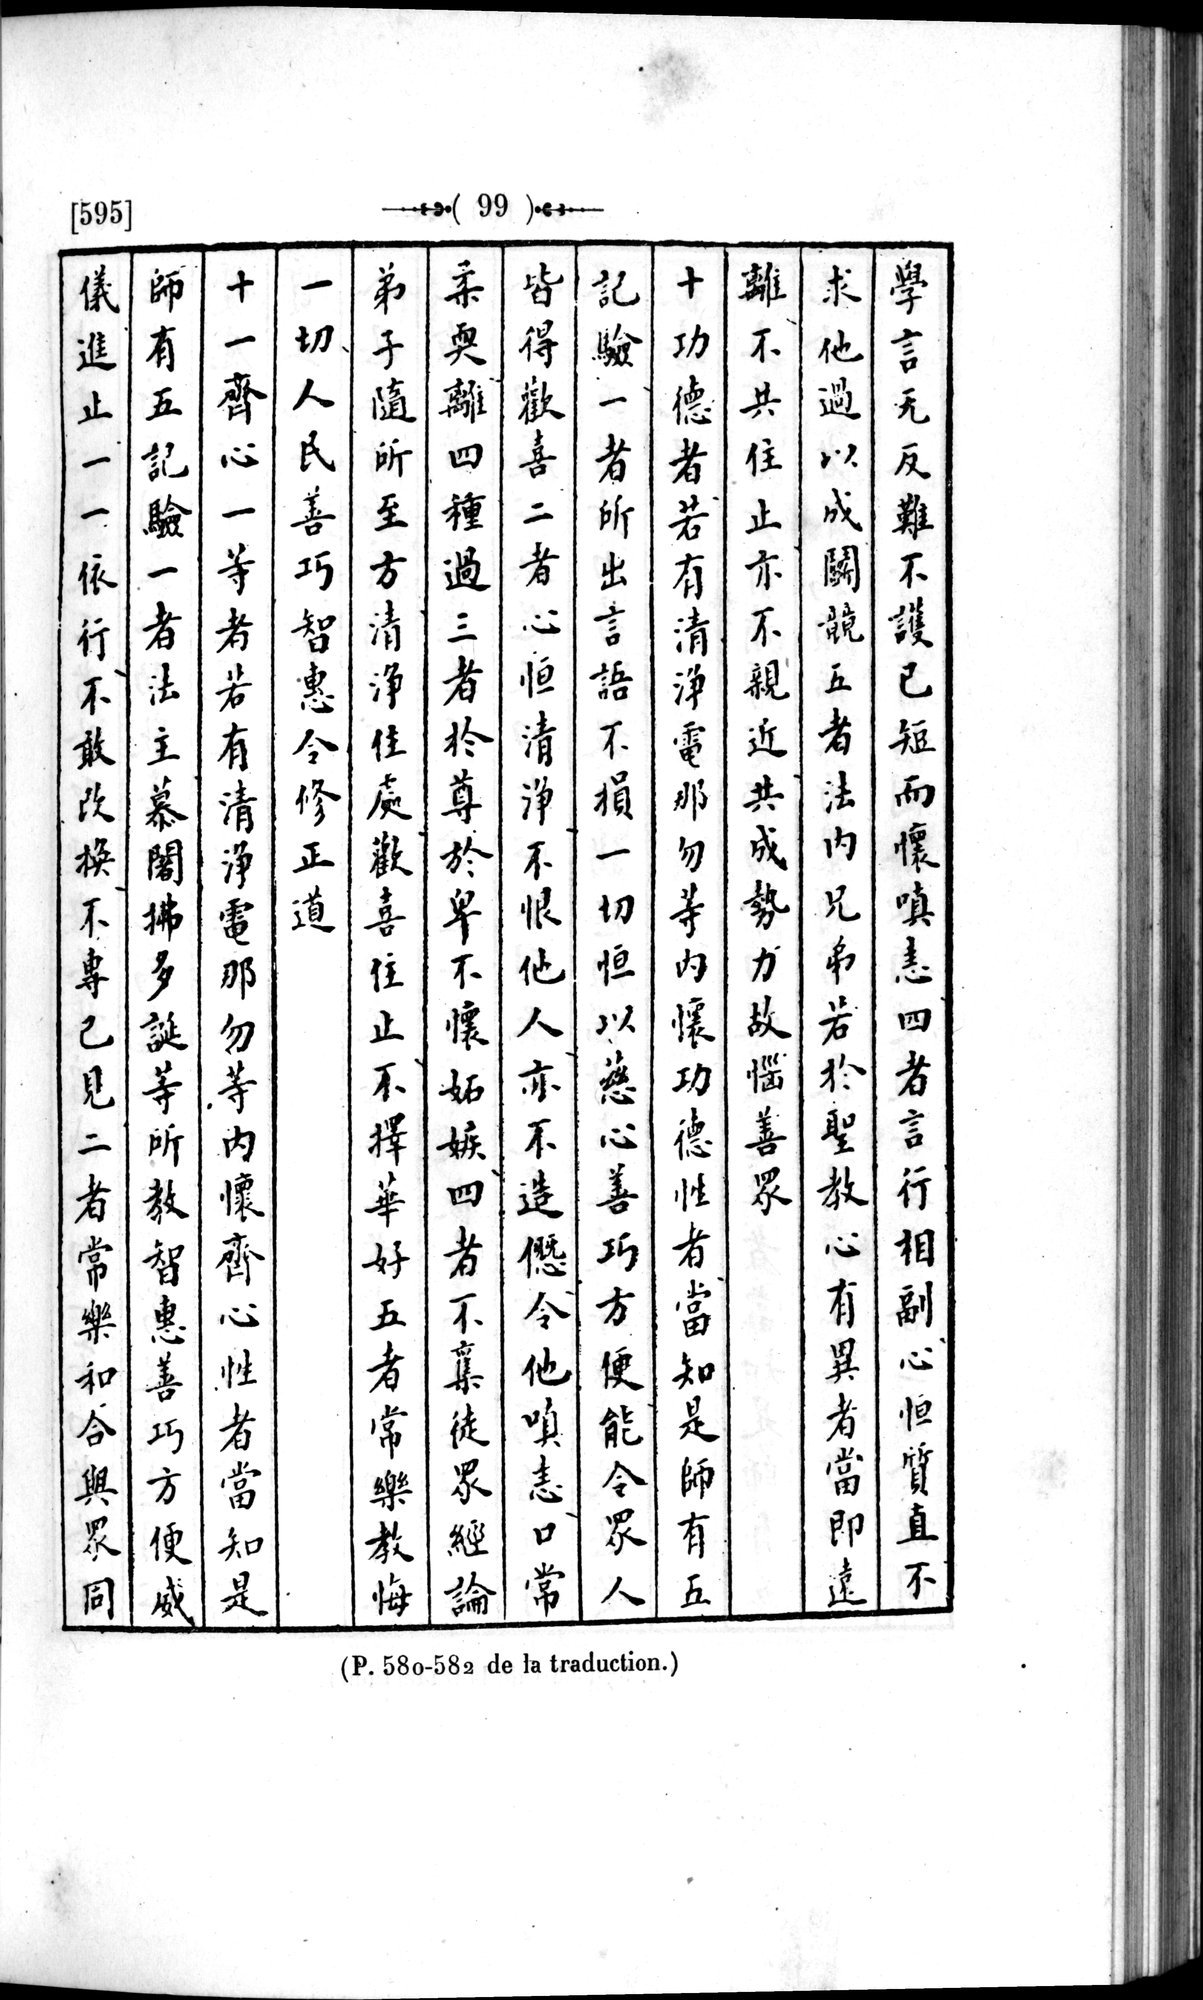 Un traité manichéen retrouvé en Chine : vol.1 / Page 109 (Grayscale High Resolution Image)